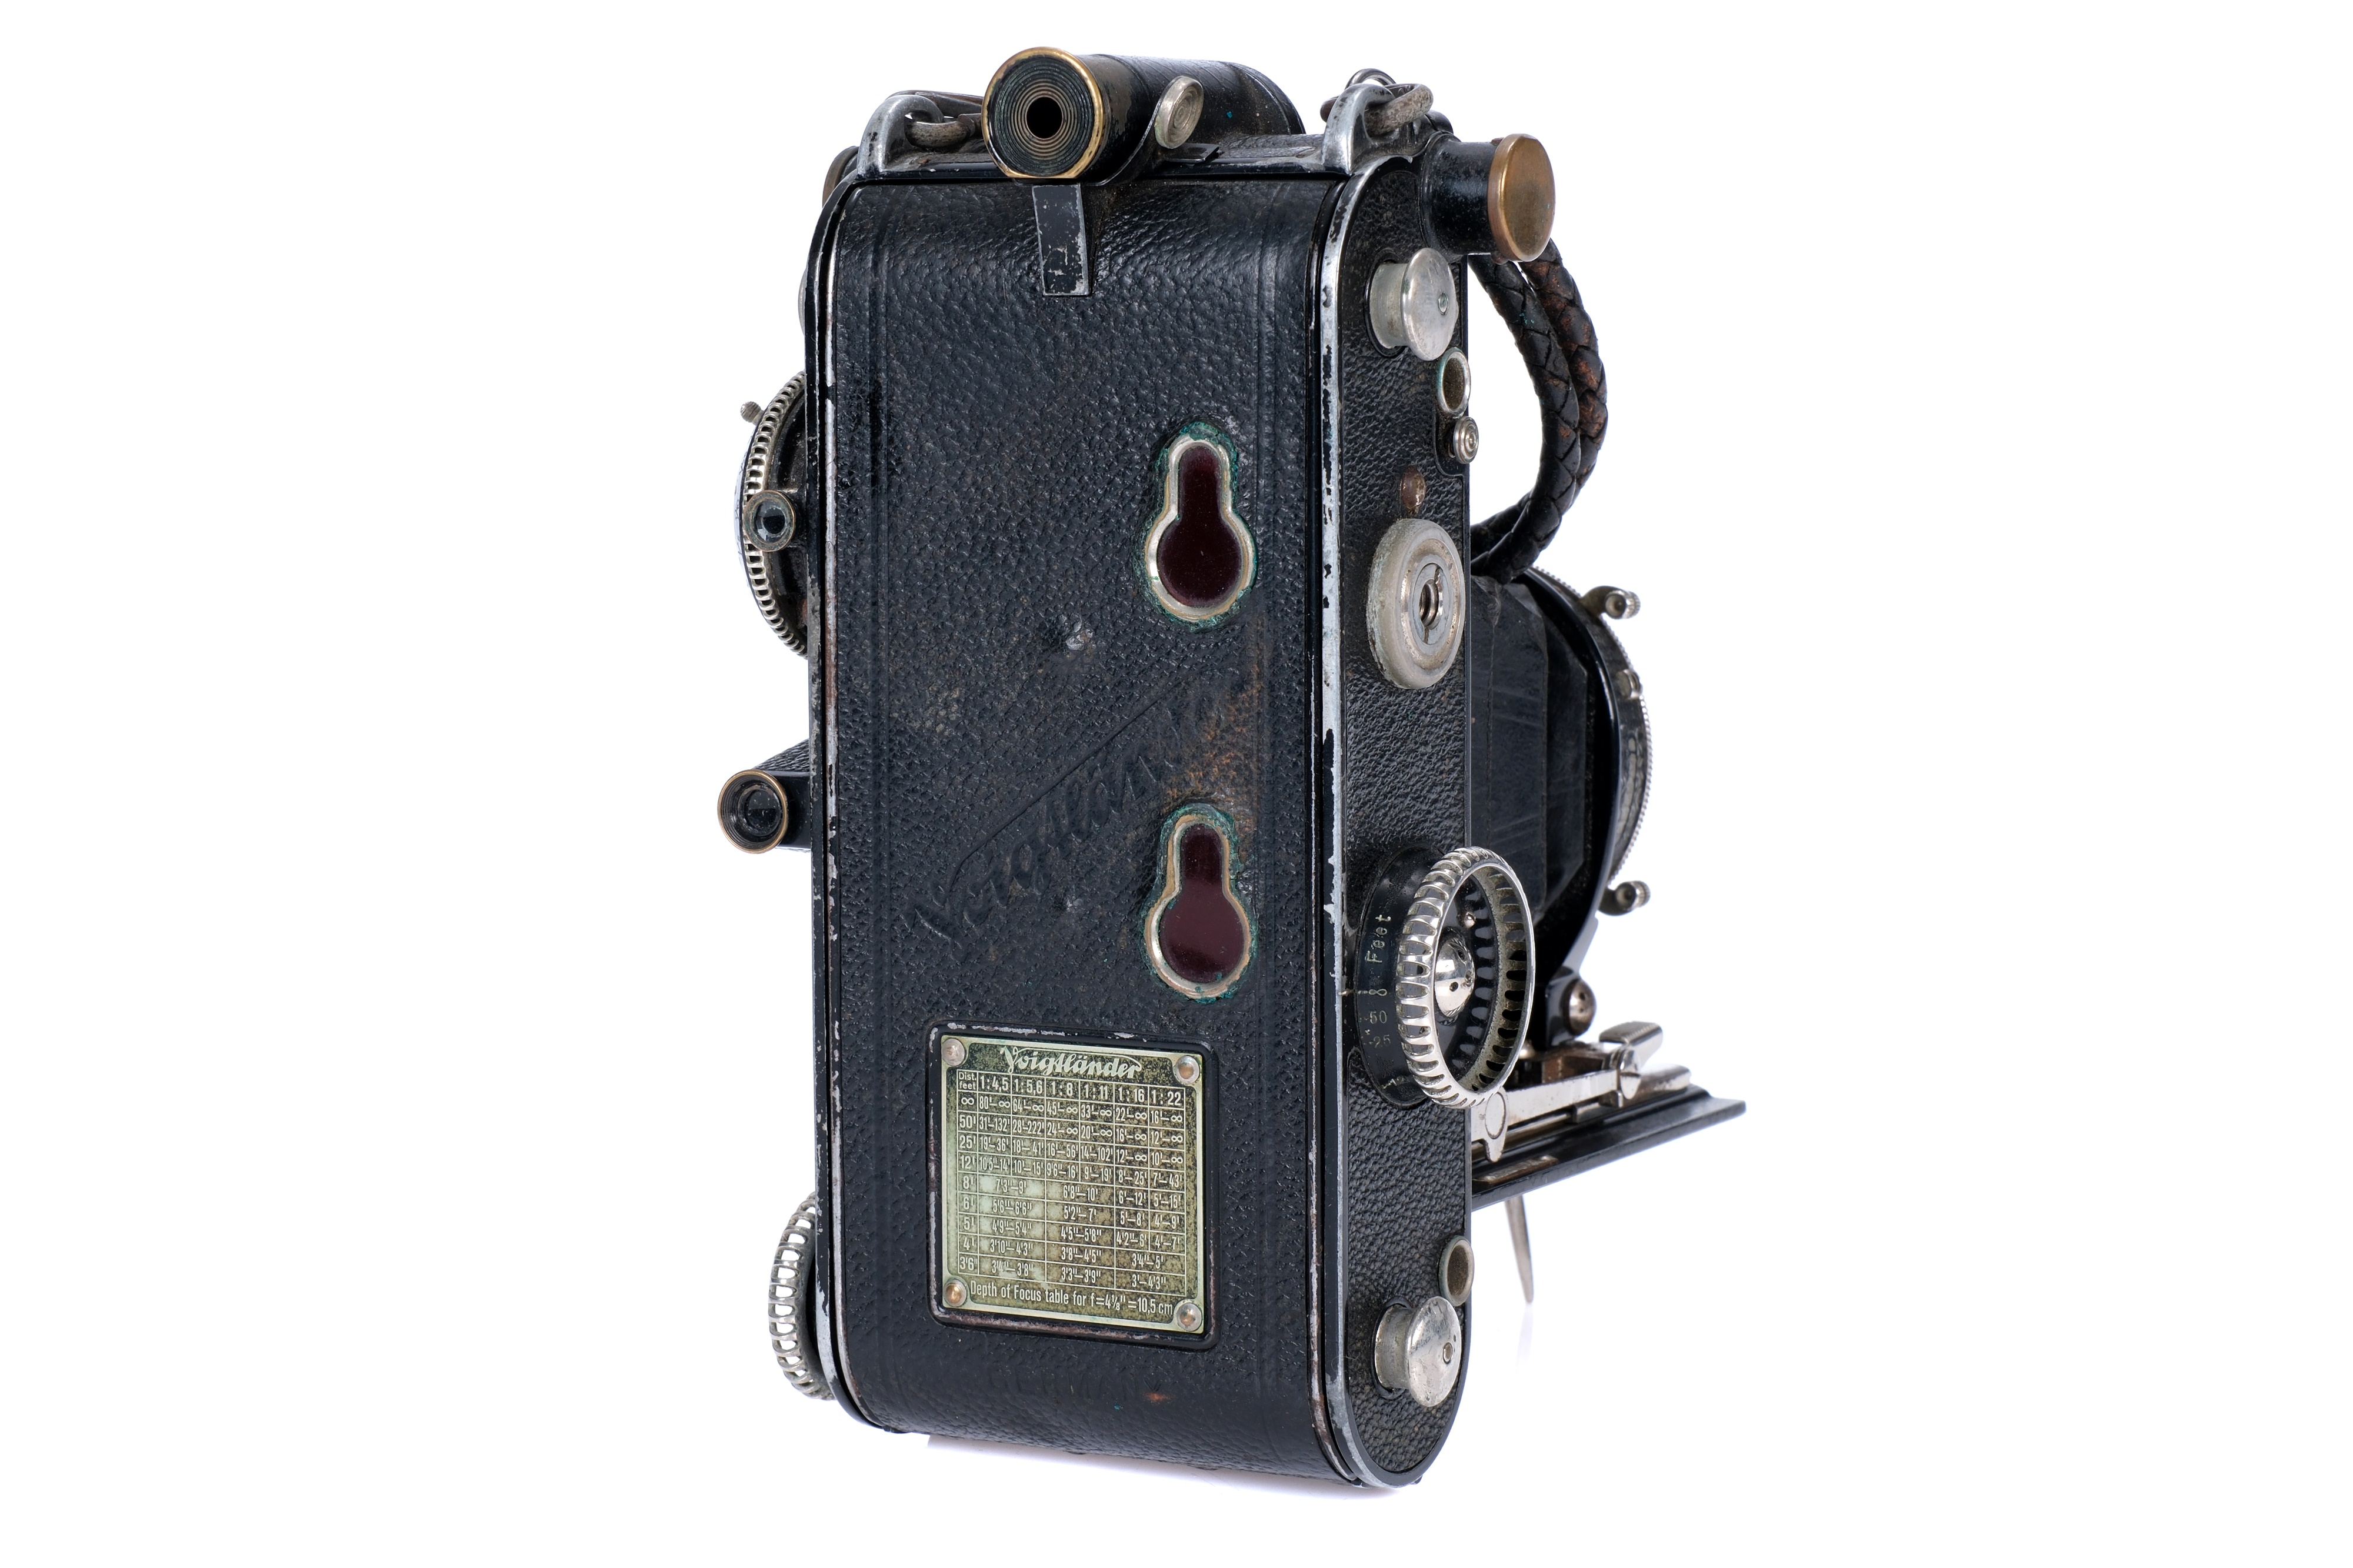 A Voigtlander Prominent 6x9 Rangefinder Camera, - Image 3 of 3